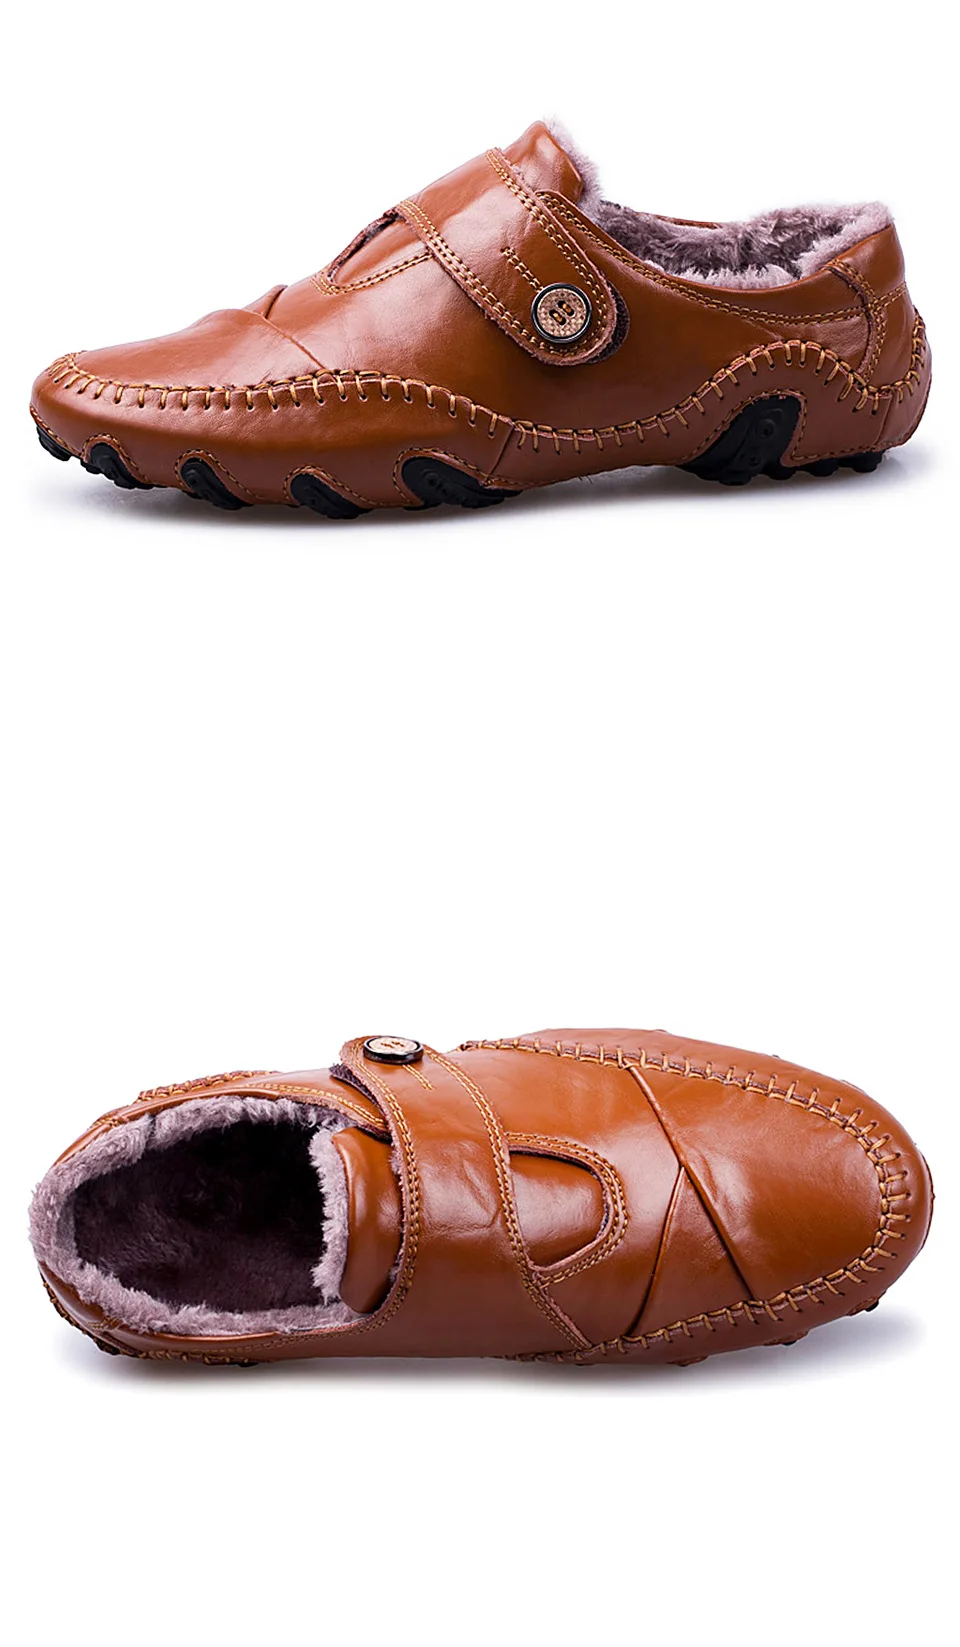 REETENE новые удобные туфли лодочки, Лоферы мужская обувь кожаные туфли мужские повседневные зимние туфли мужские уличные кроссовки мужская